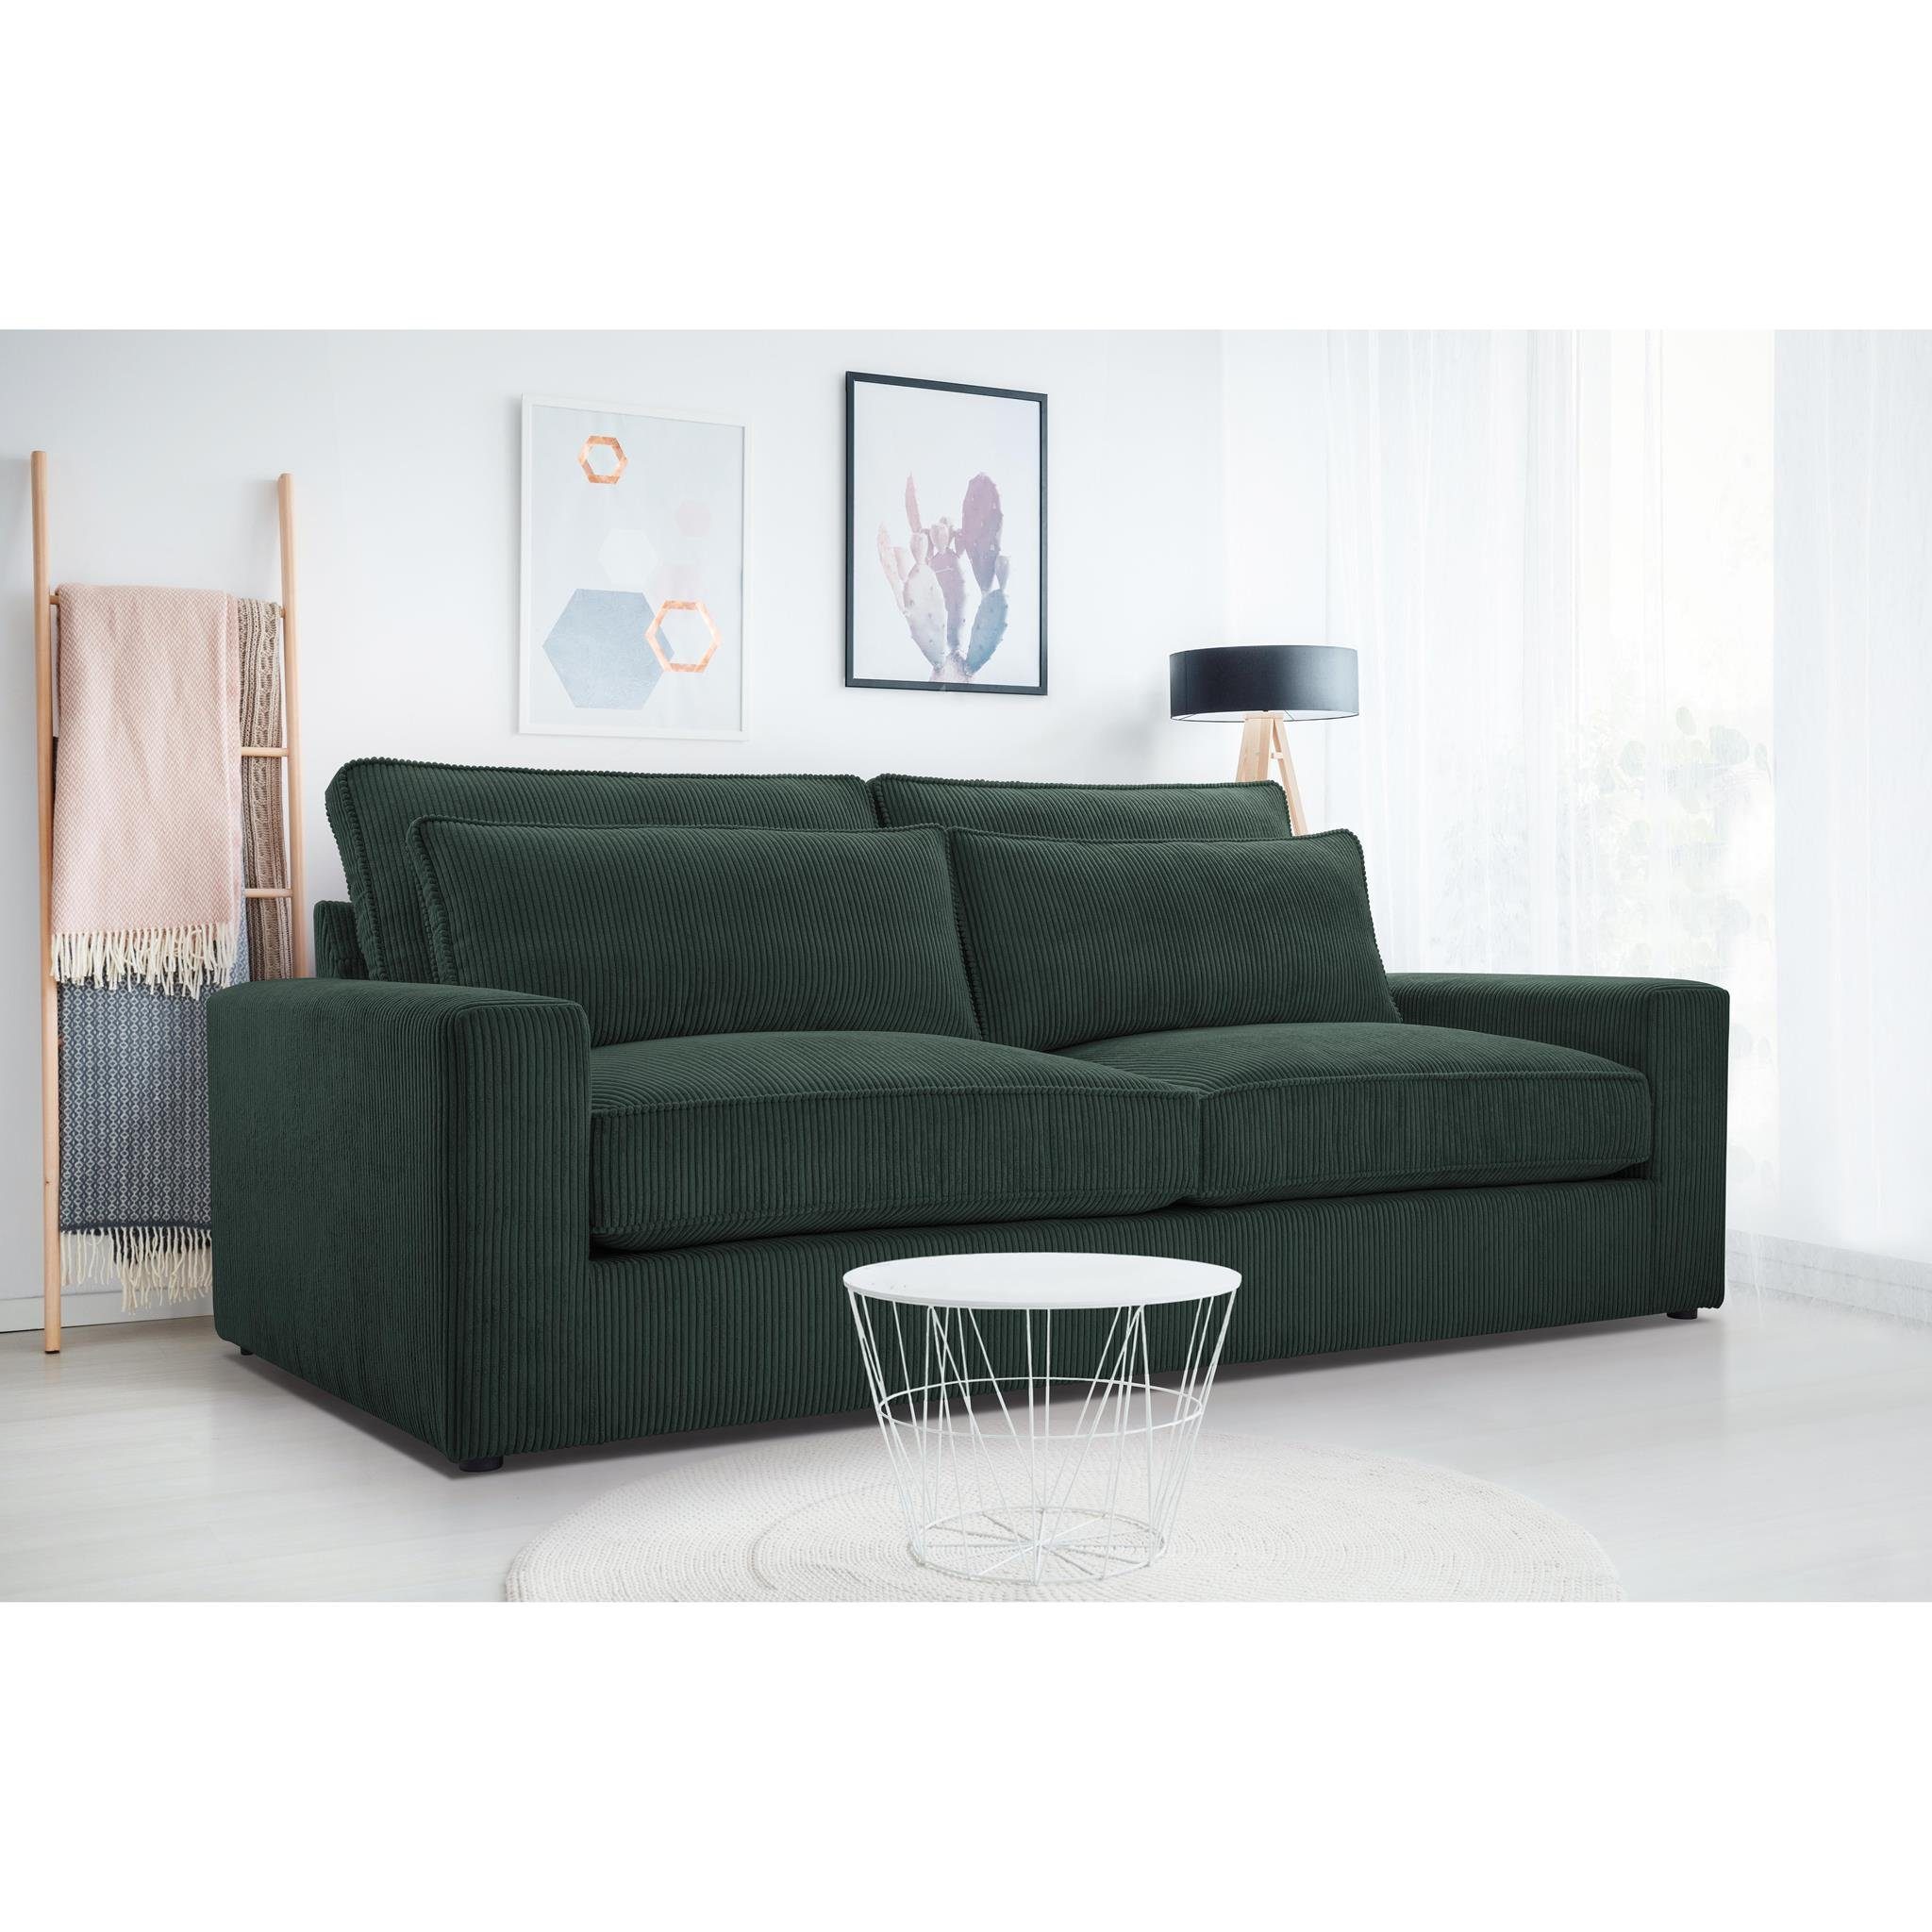 Beautysofa 3-Sitzer Como, Wellenfedern, Wohnzimmer, 221 cm Sofa im modernes Stil, Polstersofa aus Velours im Cord-Struktur Grün (lincoln 39)